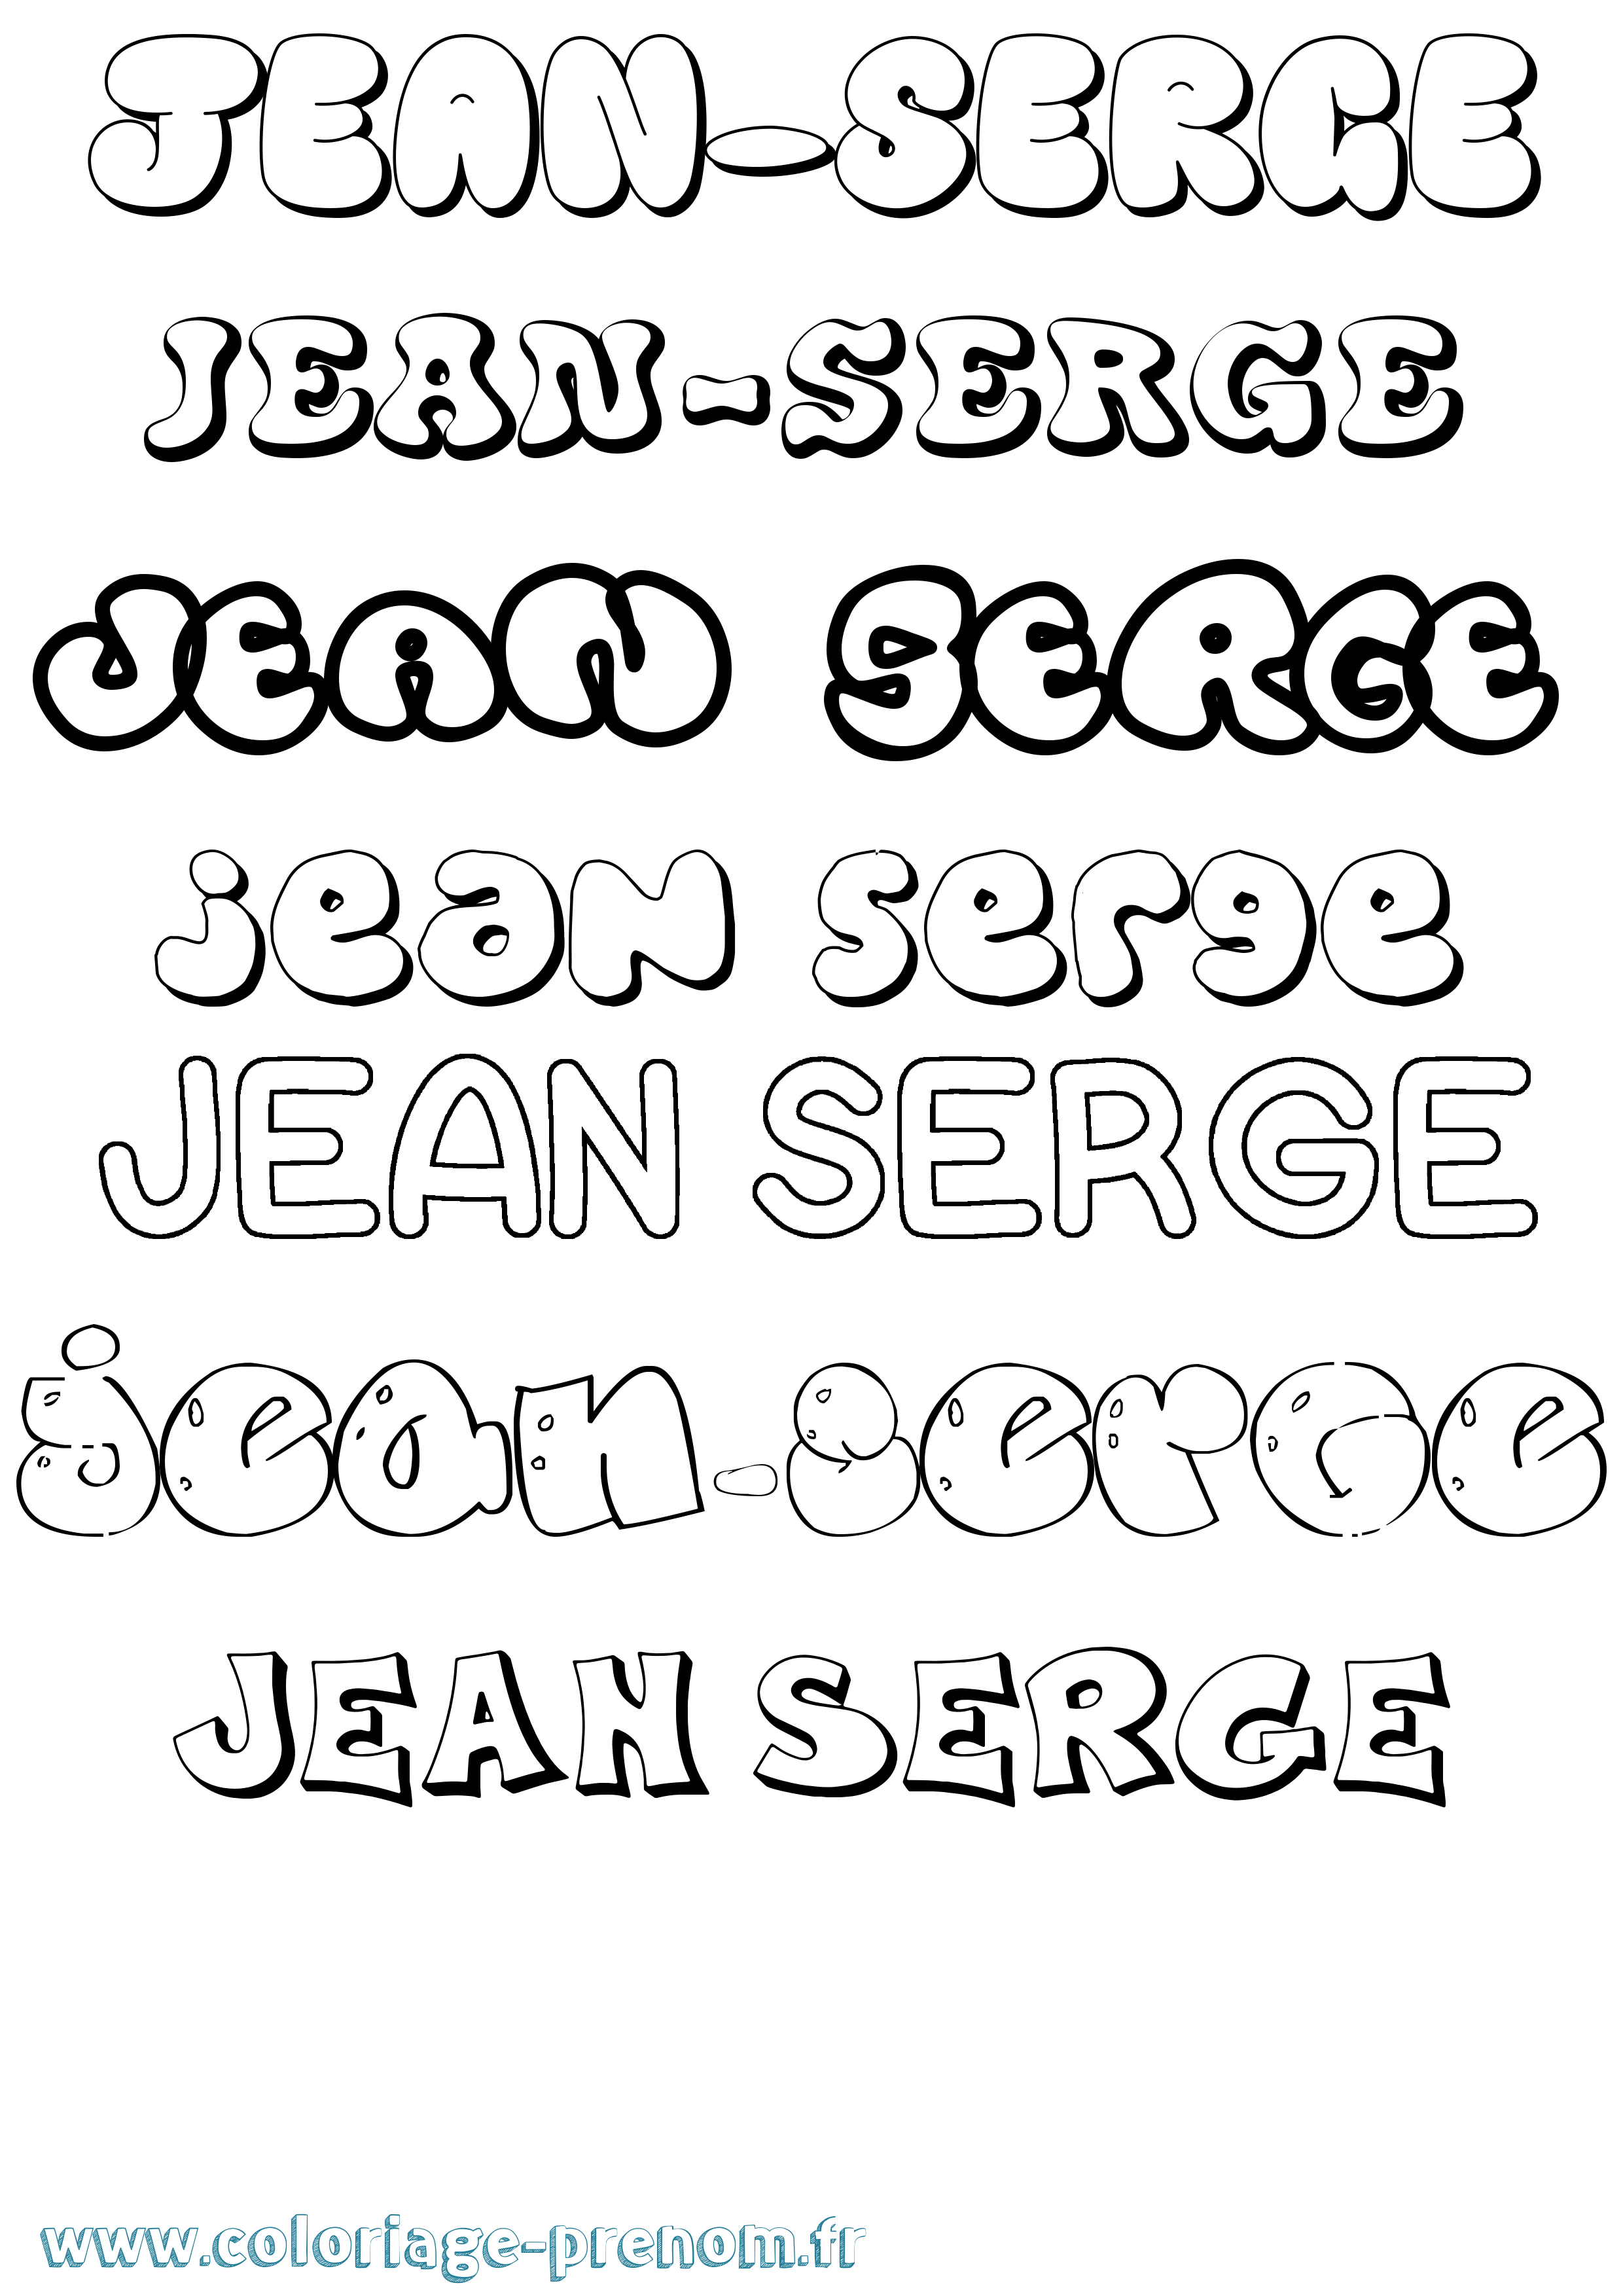 Coloriage prénom Jean-Serge Bubble